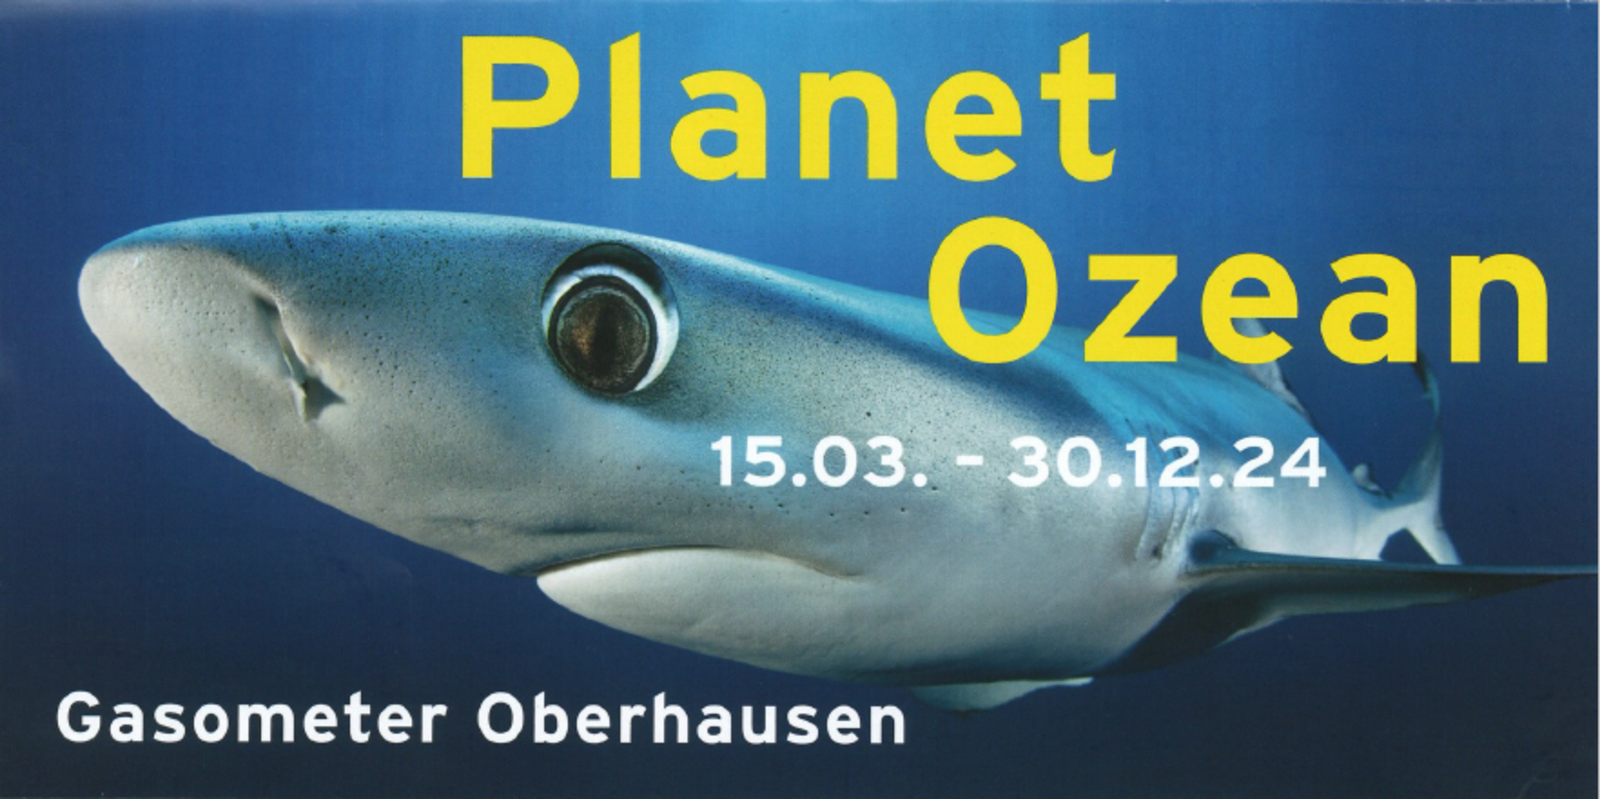 Die Ausstellung Planet Ozean im Gasometer hat begonnen